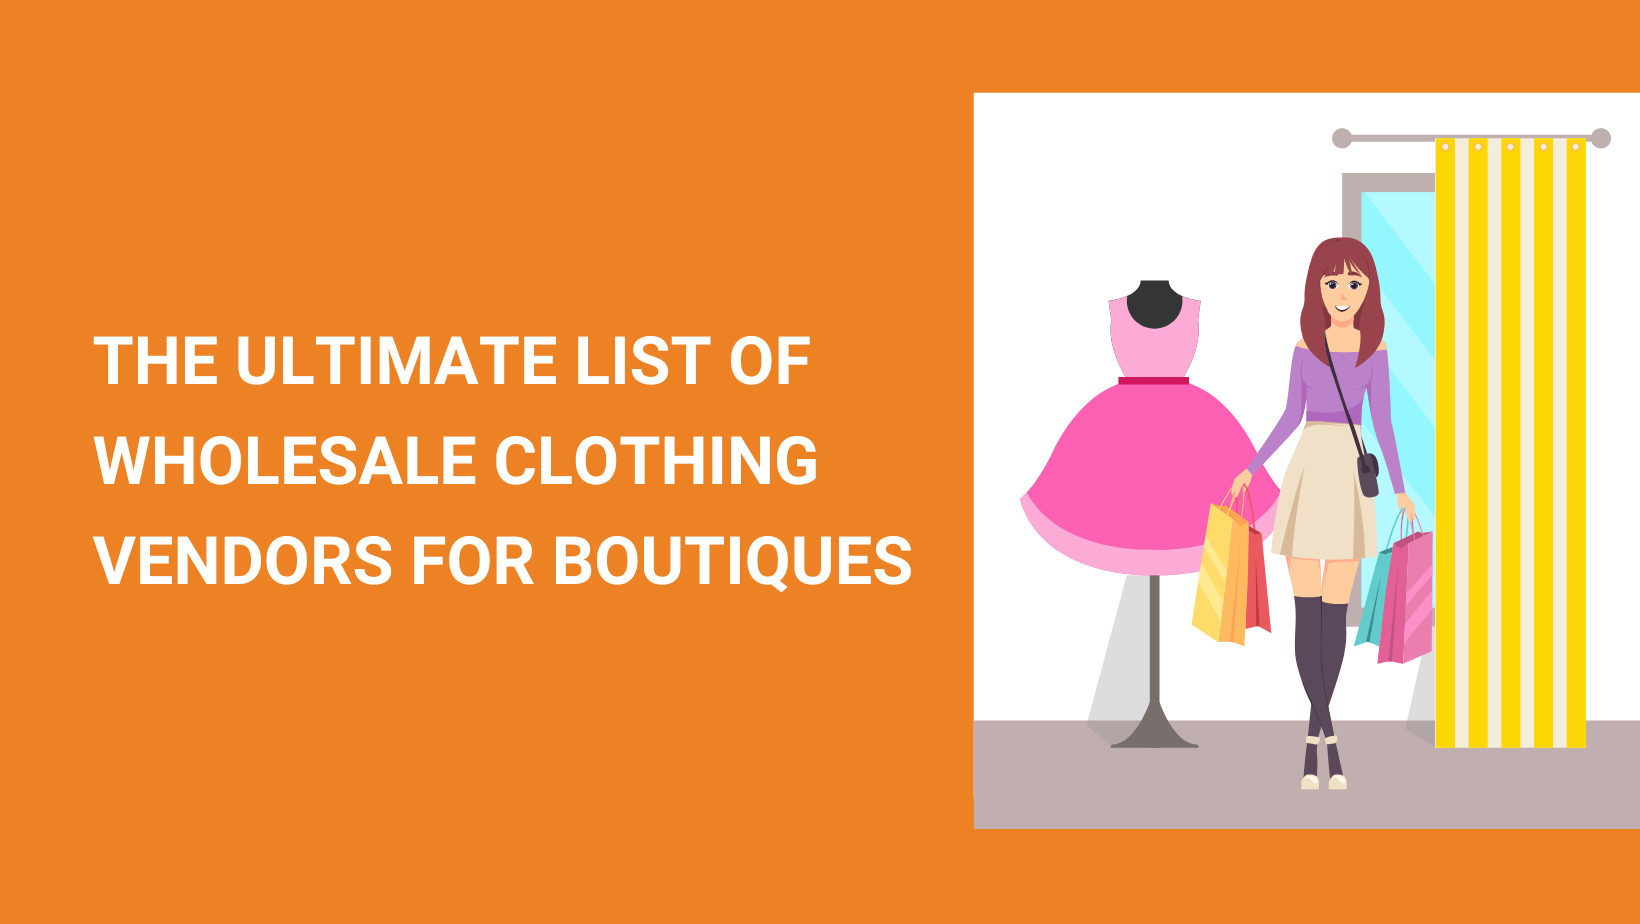 Wholesale Clothing Boutiques